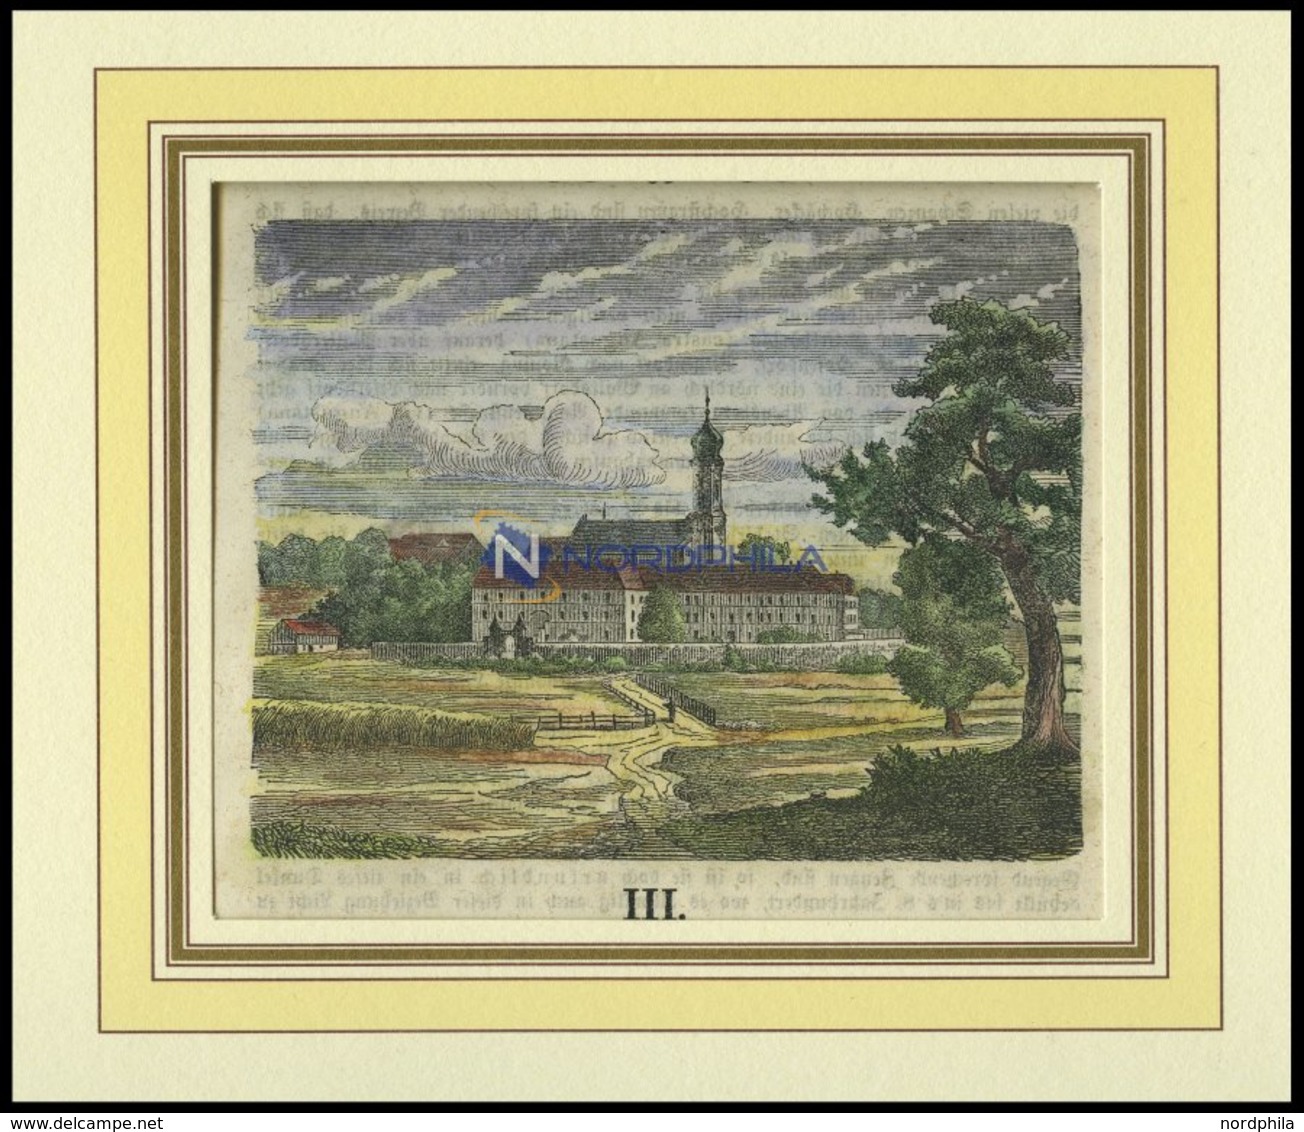 RONING/NIEDERBAYERN: Teilansicht Mit Dem Kolster, Kolorierter Holzstich A.d. Sulzb.Kalender Von 1868 - Lithographien